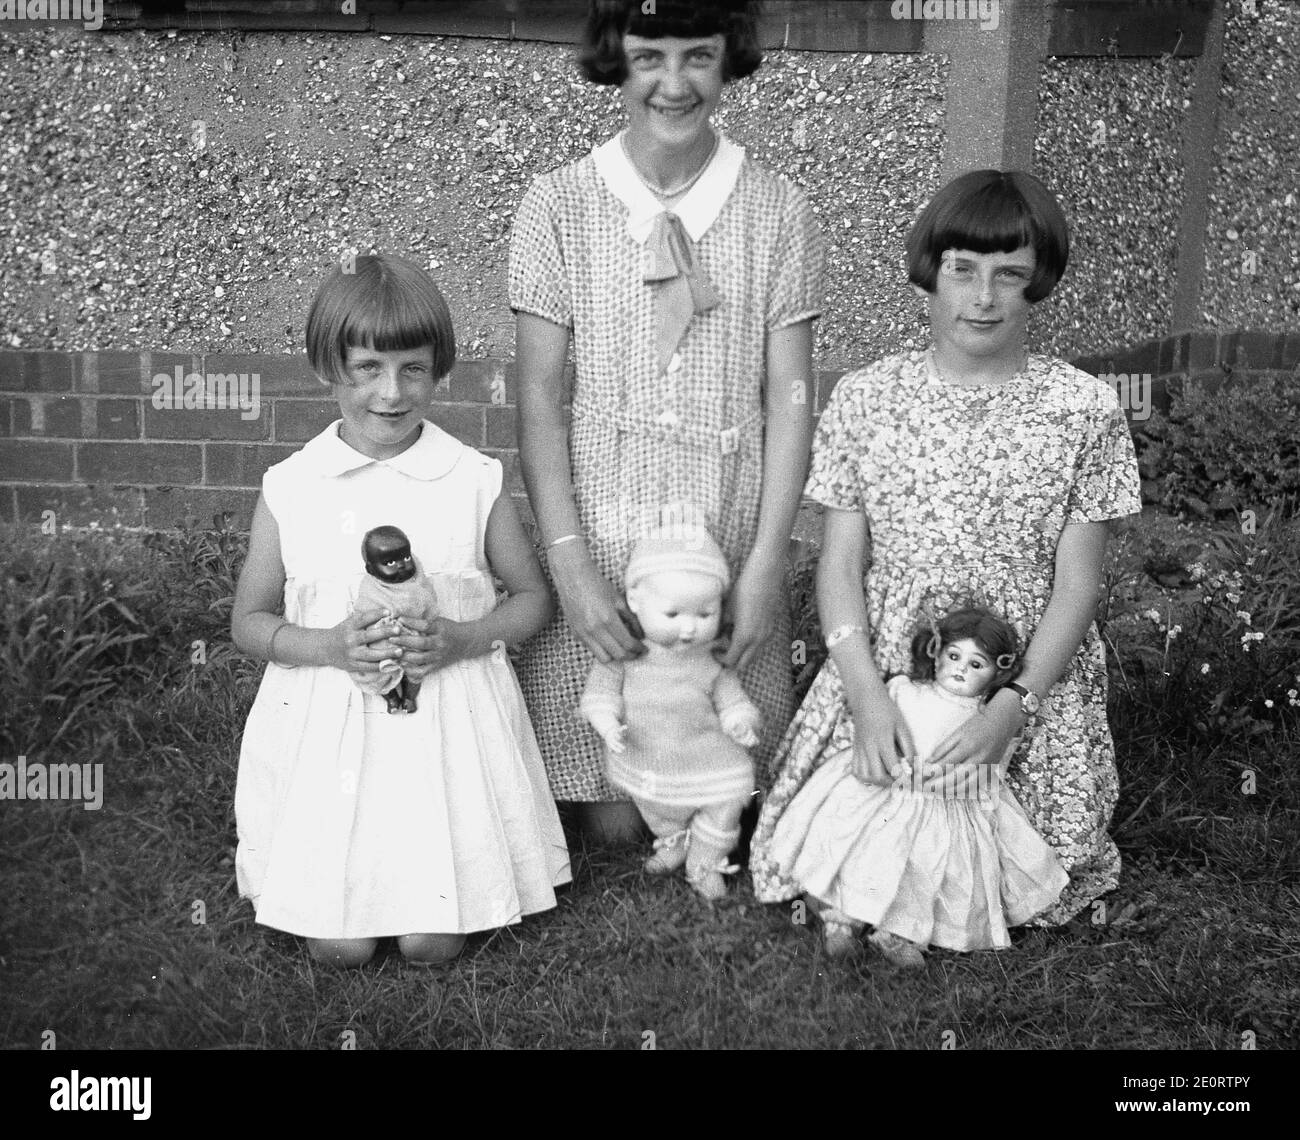 1940er Jahre, historisch, drei süße junge Mädchen, möglicherweise Schwestern, da sie den gleichen Stil der Frisur haben - bekannt als ein Puddingbecken Haarschnitt - kniend auf dem Gras vor einem Kieselstein-Dash Haus mit ihren wertvollen Spielzeugpuppen. Stockfoto